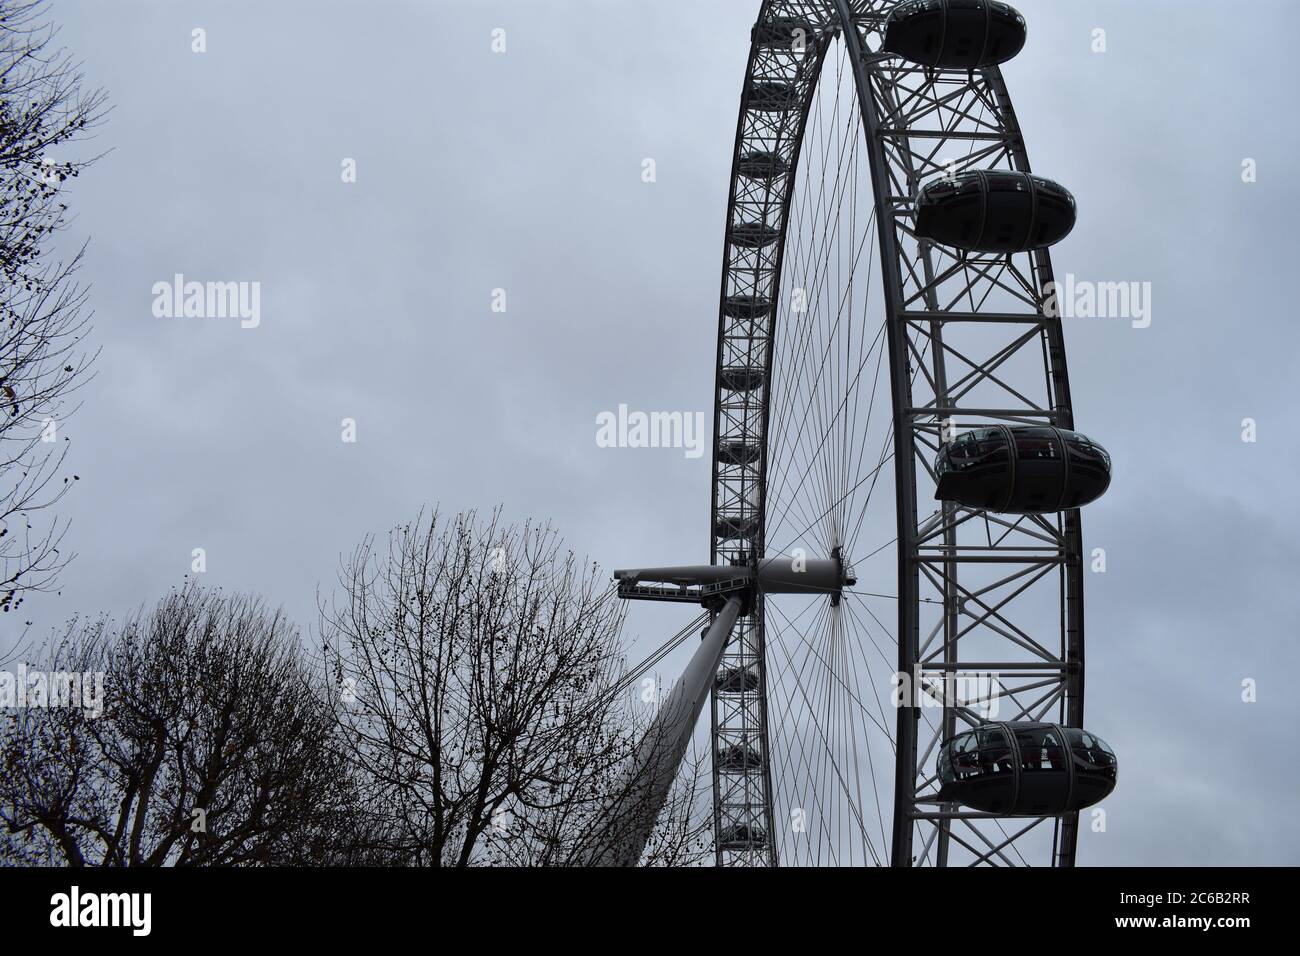 Das London Eye. Ein riesiges Beobachtungsrad auf dem Südufer. Ein Teil des Rades wird an einem wolkigen Wintertag mit Bäumen um den Rand des Bildes gezeigt. Stockfoto